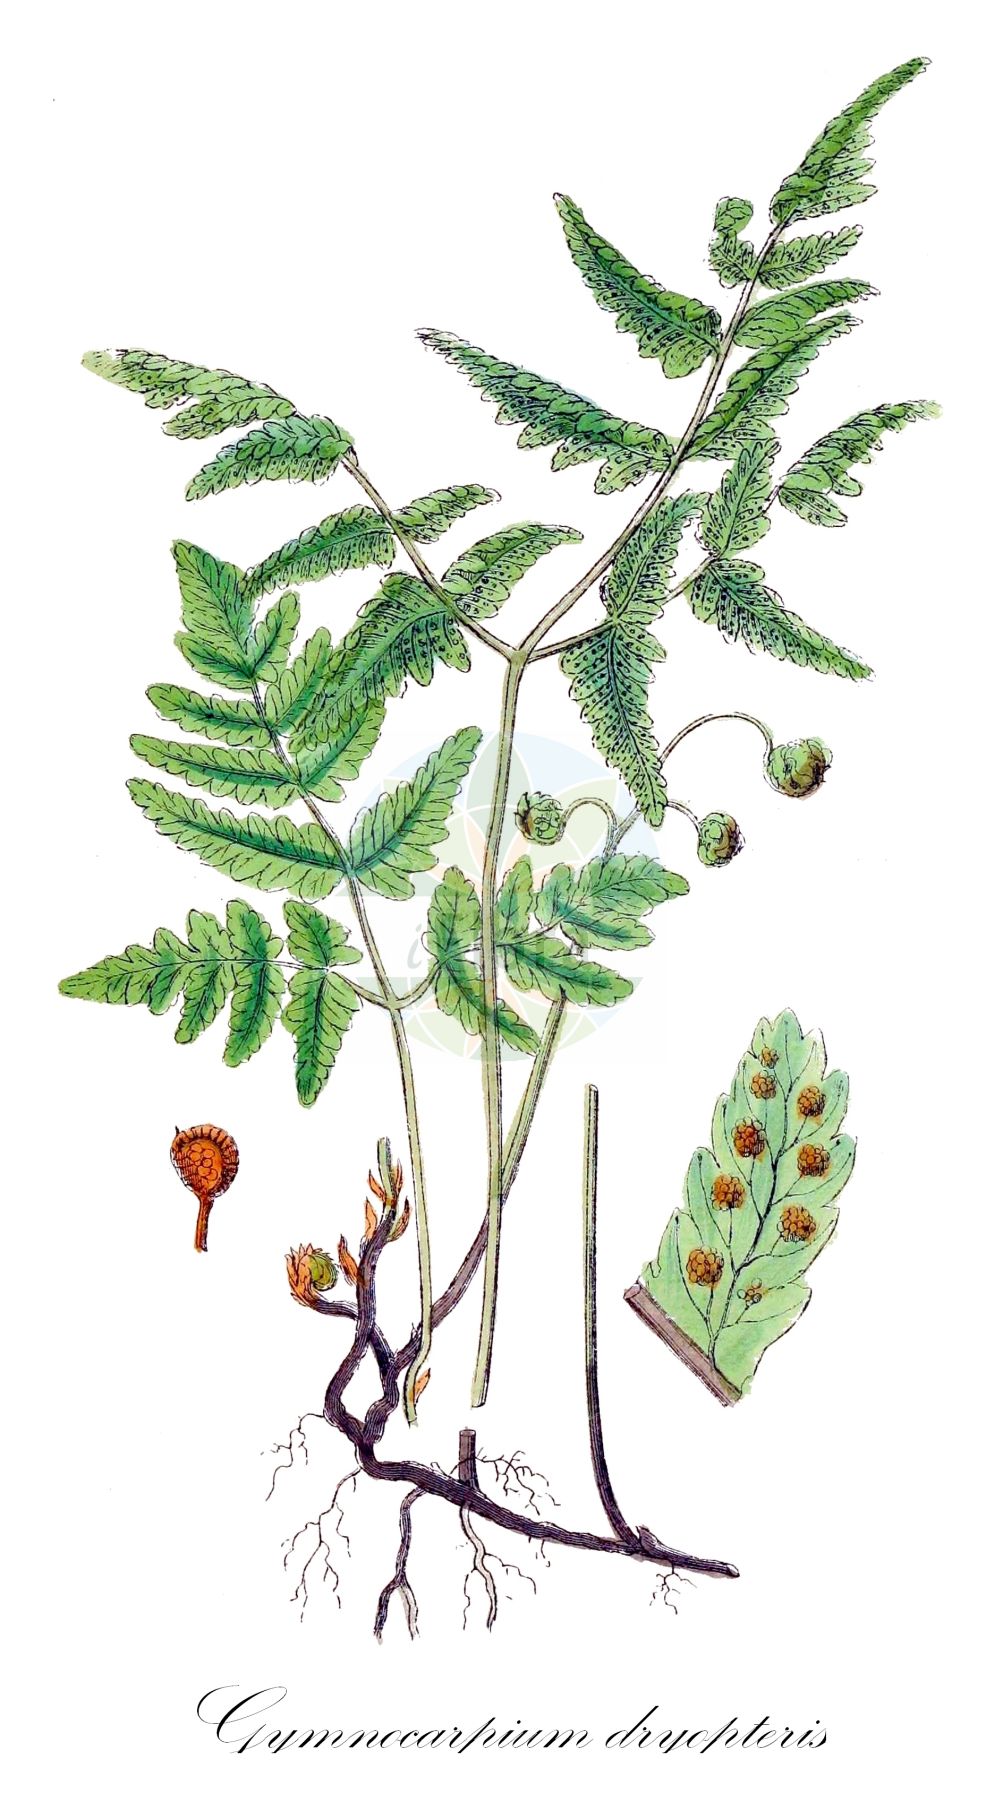 Historische Abbildung von Gymnocarpium dryopteris (Eichenfarn - Oak Fern). Das Bild zeigt Blatt, Bluete, Frucht und Same. ---- Historical Drawing of Gymnocarpium dryopteris (Eichenfarn - Oak Fern). The image is showing leaf, flower, fruit and seed.(Gymnocarpium dryopteris,Eichenfarn,Oak Fern,Currania dryopteris,Dryopteris linnaeana,Dryopteris pulchella,Dryopteris pumila,Gymnocarpium dryopteris,Lastrea dryopteris,Nephrodium dryopteris,Phegopteris dryopteris,Polypodium dryopteris,Polypodium pulchellum,Thelypteris dryopteris,Eichenfarn,Oak Fern,Western Oakfern,Woodland Oak Fern,Gymnocarpium,Eichenfarn,Oak Ferns,Cystopteridaceae,Bladderfern family,Blasenfarngewächse,Blatt,Bluete,Frucht,Same,leaf,flower,fruit,seed,Sowerby (1790-1813))